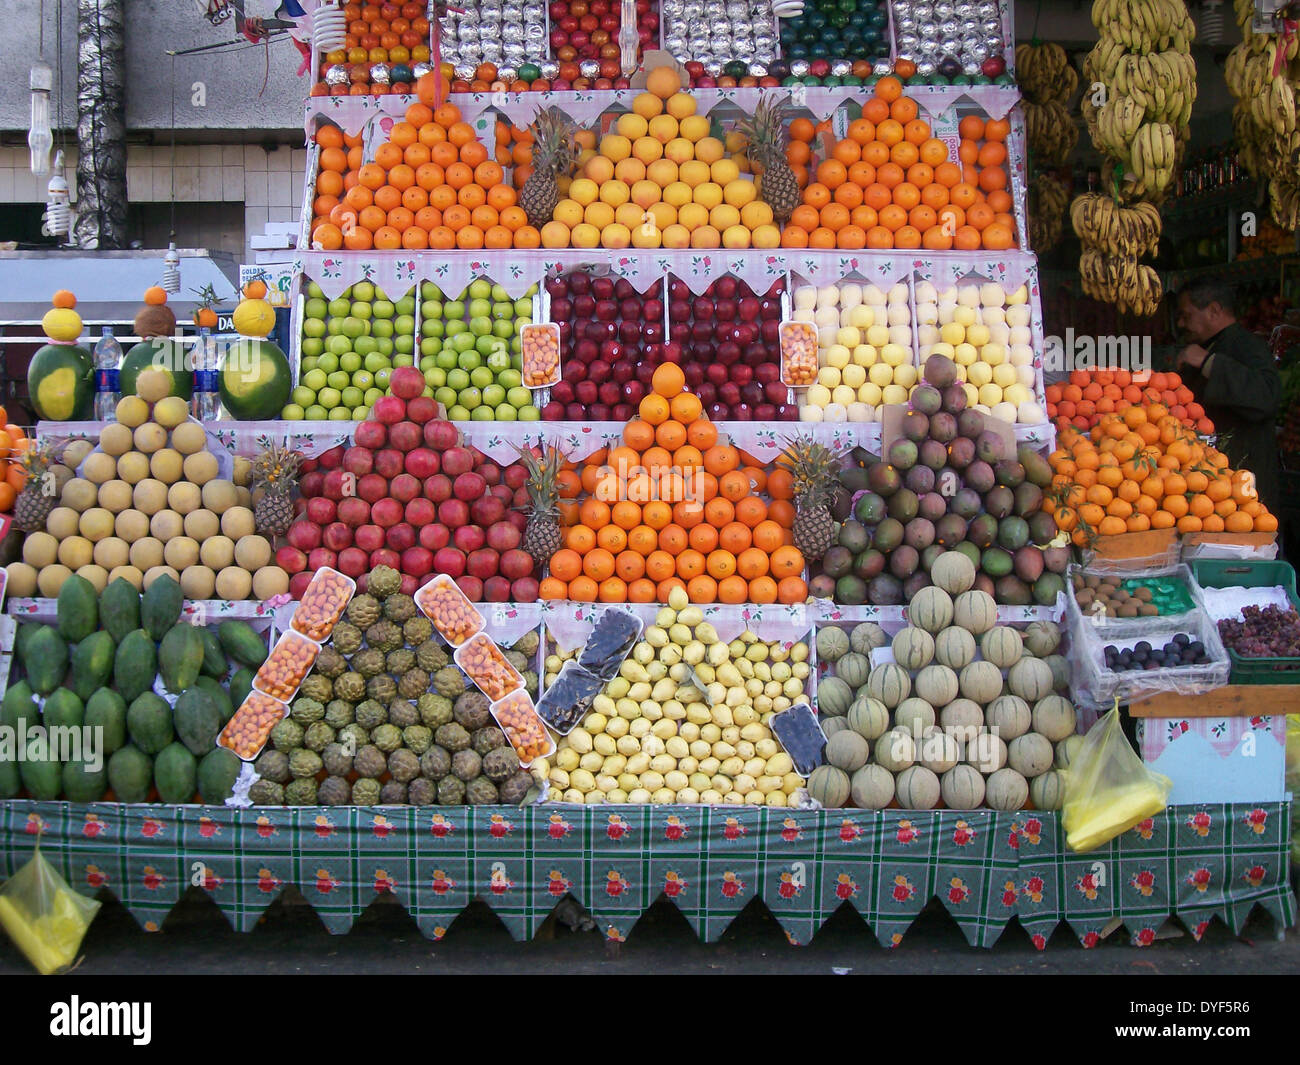 Obst Stall, Scharm El-Scheich, Ägypten, 2009. Die bildende Kunst Obst auf einem Marktstand anzeigen. Stockfoto